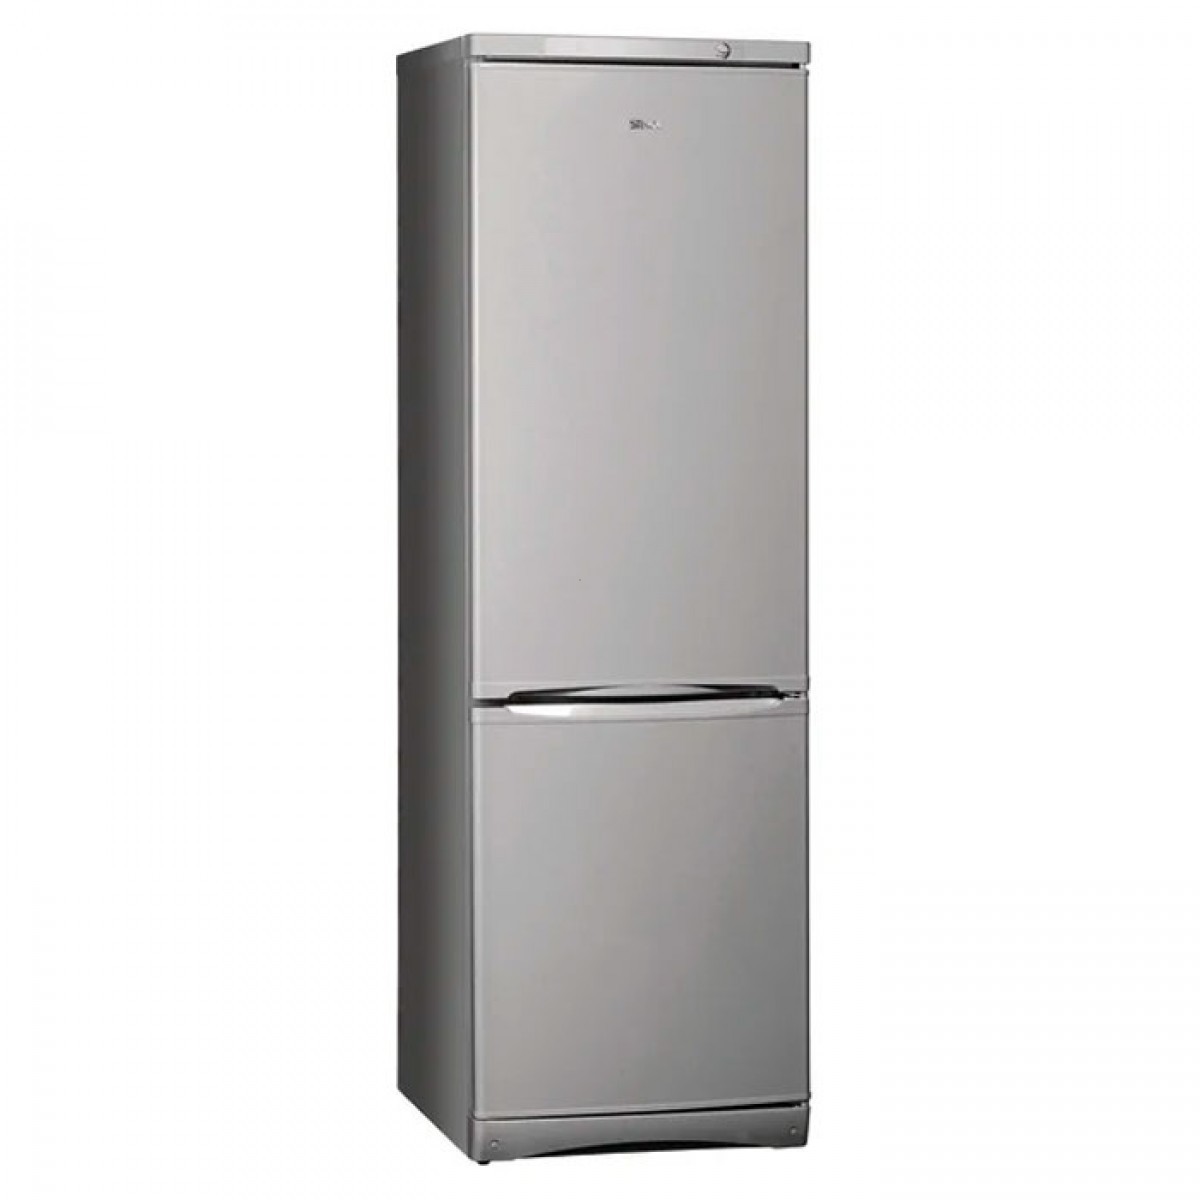 Спб купить холодильник недорого двухкамерный. Холодильник Stinol STS 167. Холодильник Stinol STS 185 S. Холодильник Stinol STS 185. Холодильник Stinol STS 185 S двухкамерный серебристый.